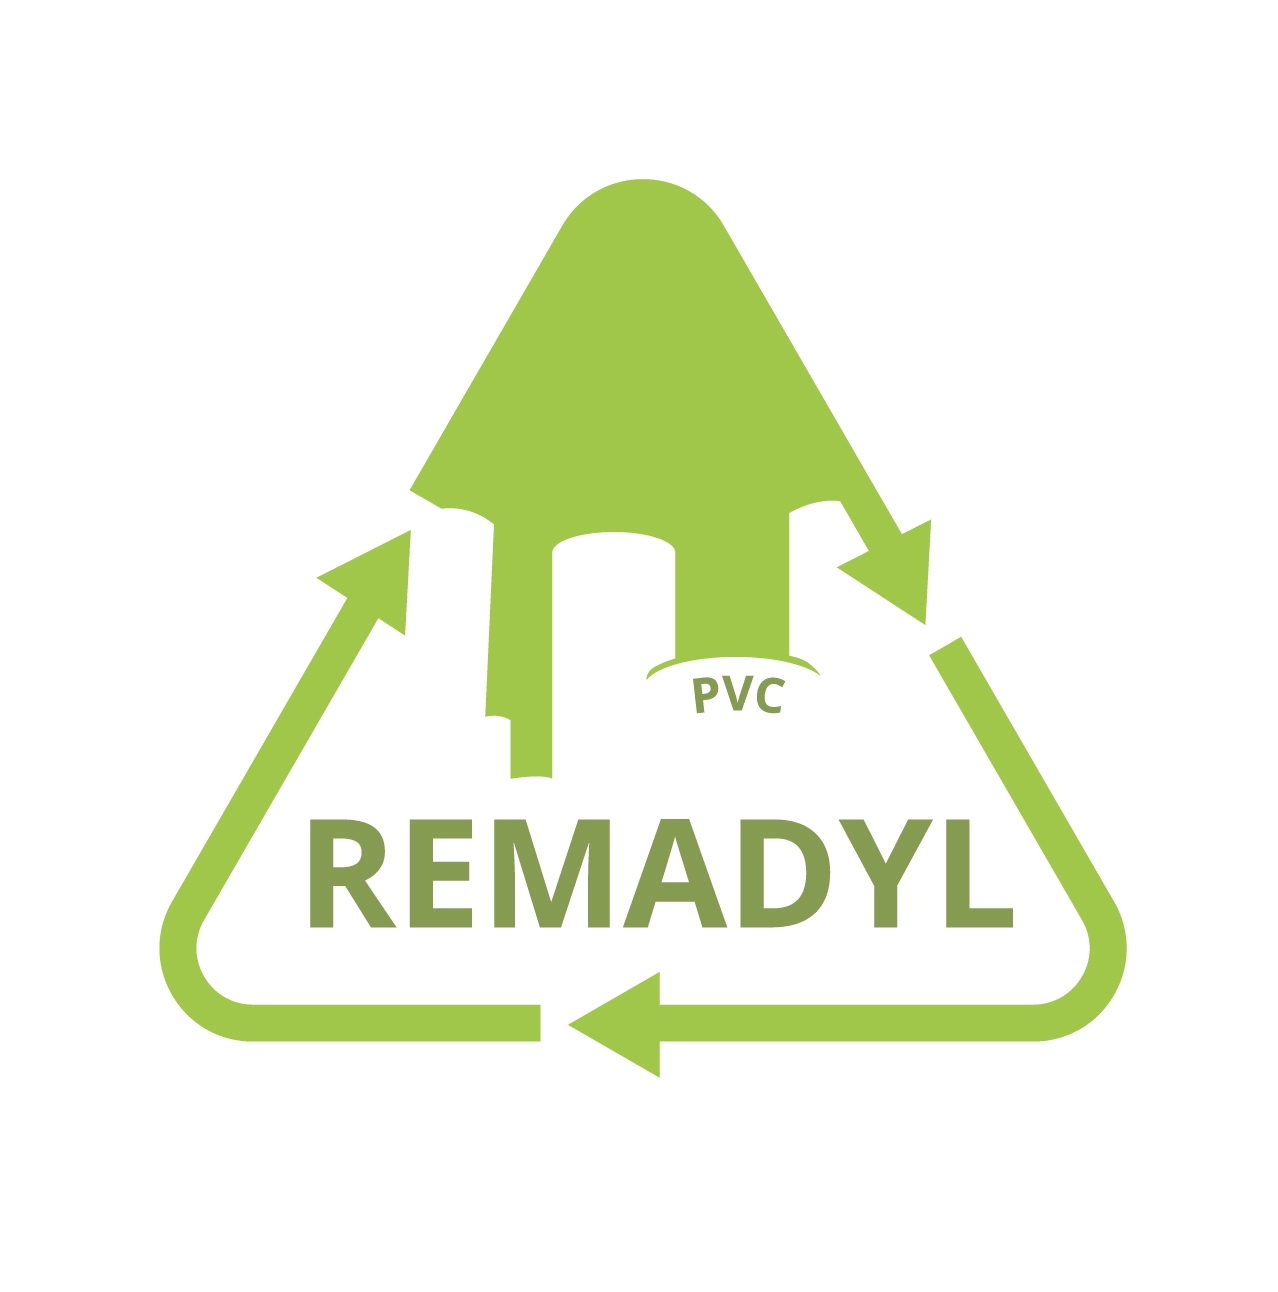 Das Projekt REMADYL trägt durch das Recycling von PVC zum EU-Wiederverwertungsprogramm bei.